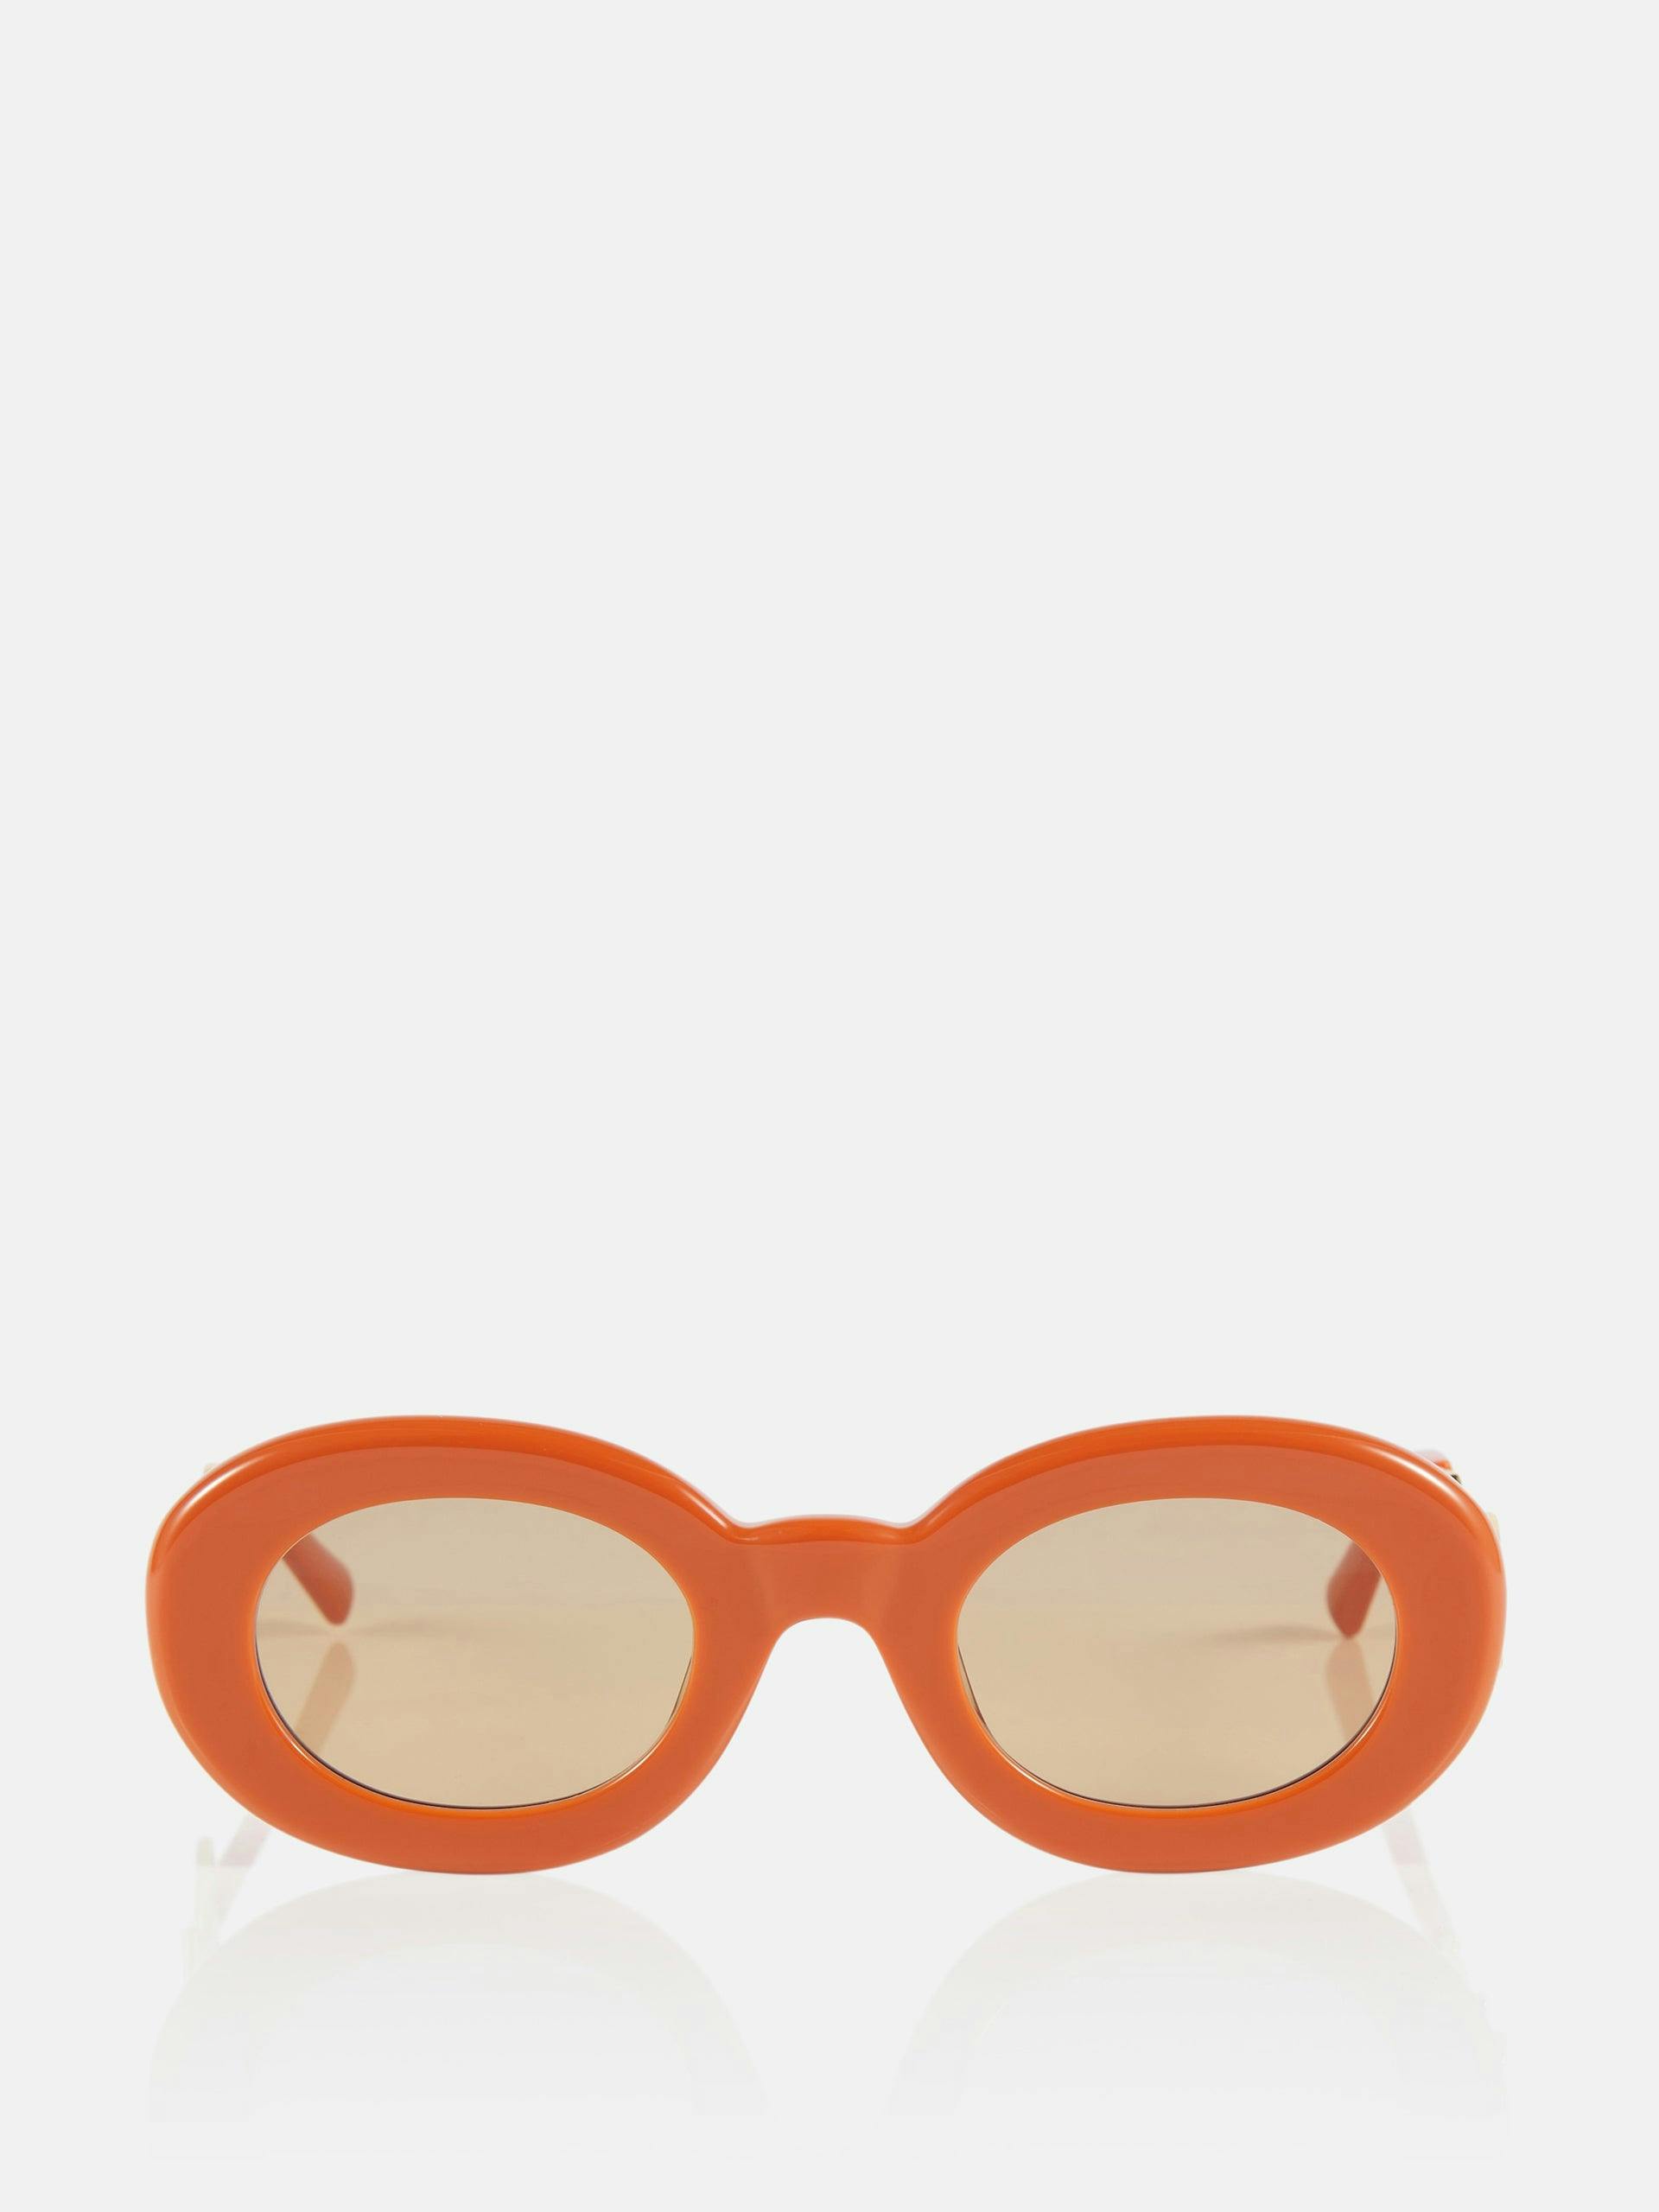 Orange oval sunglasses